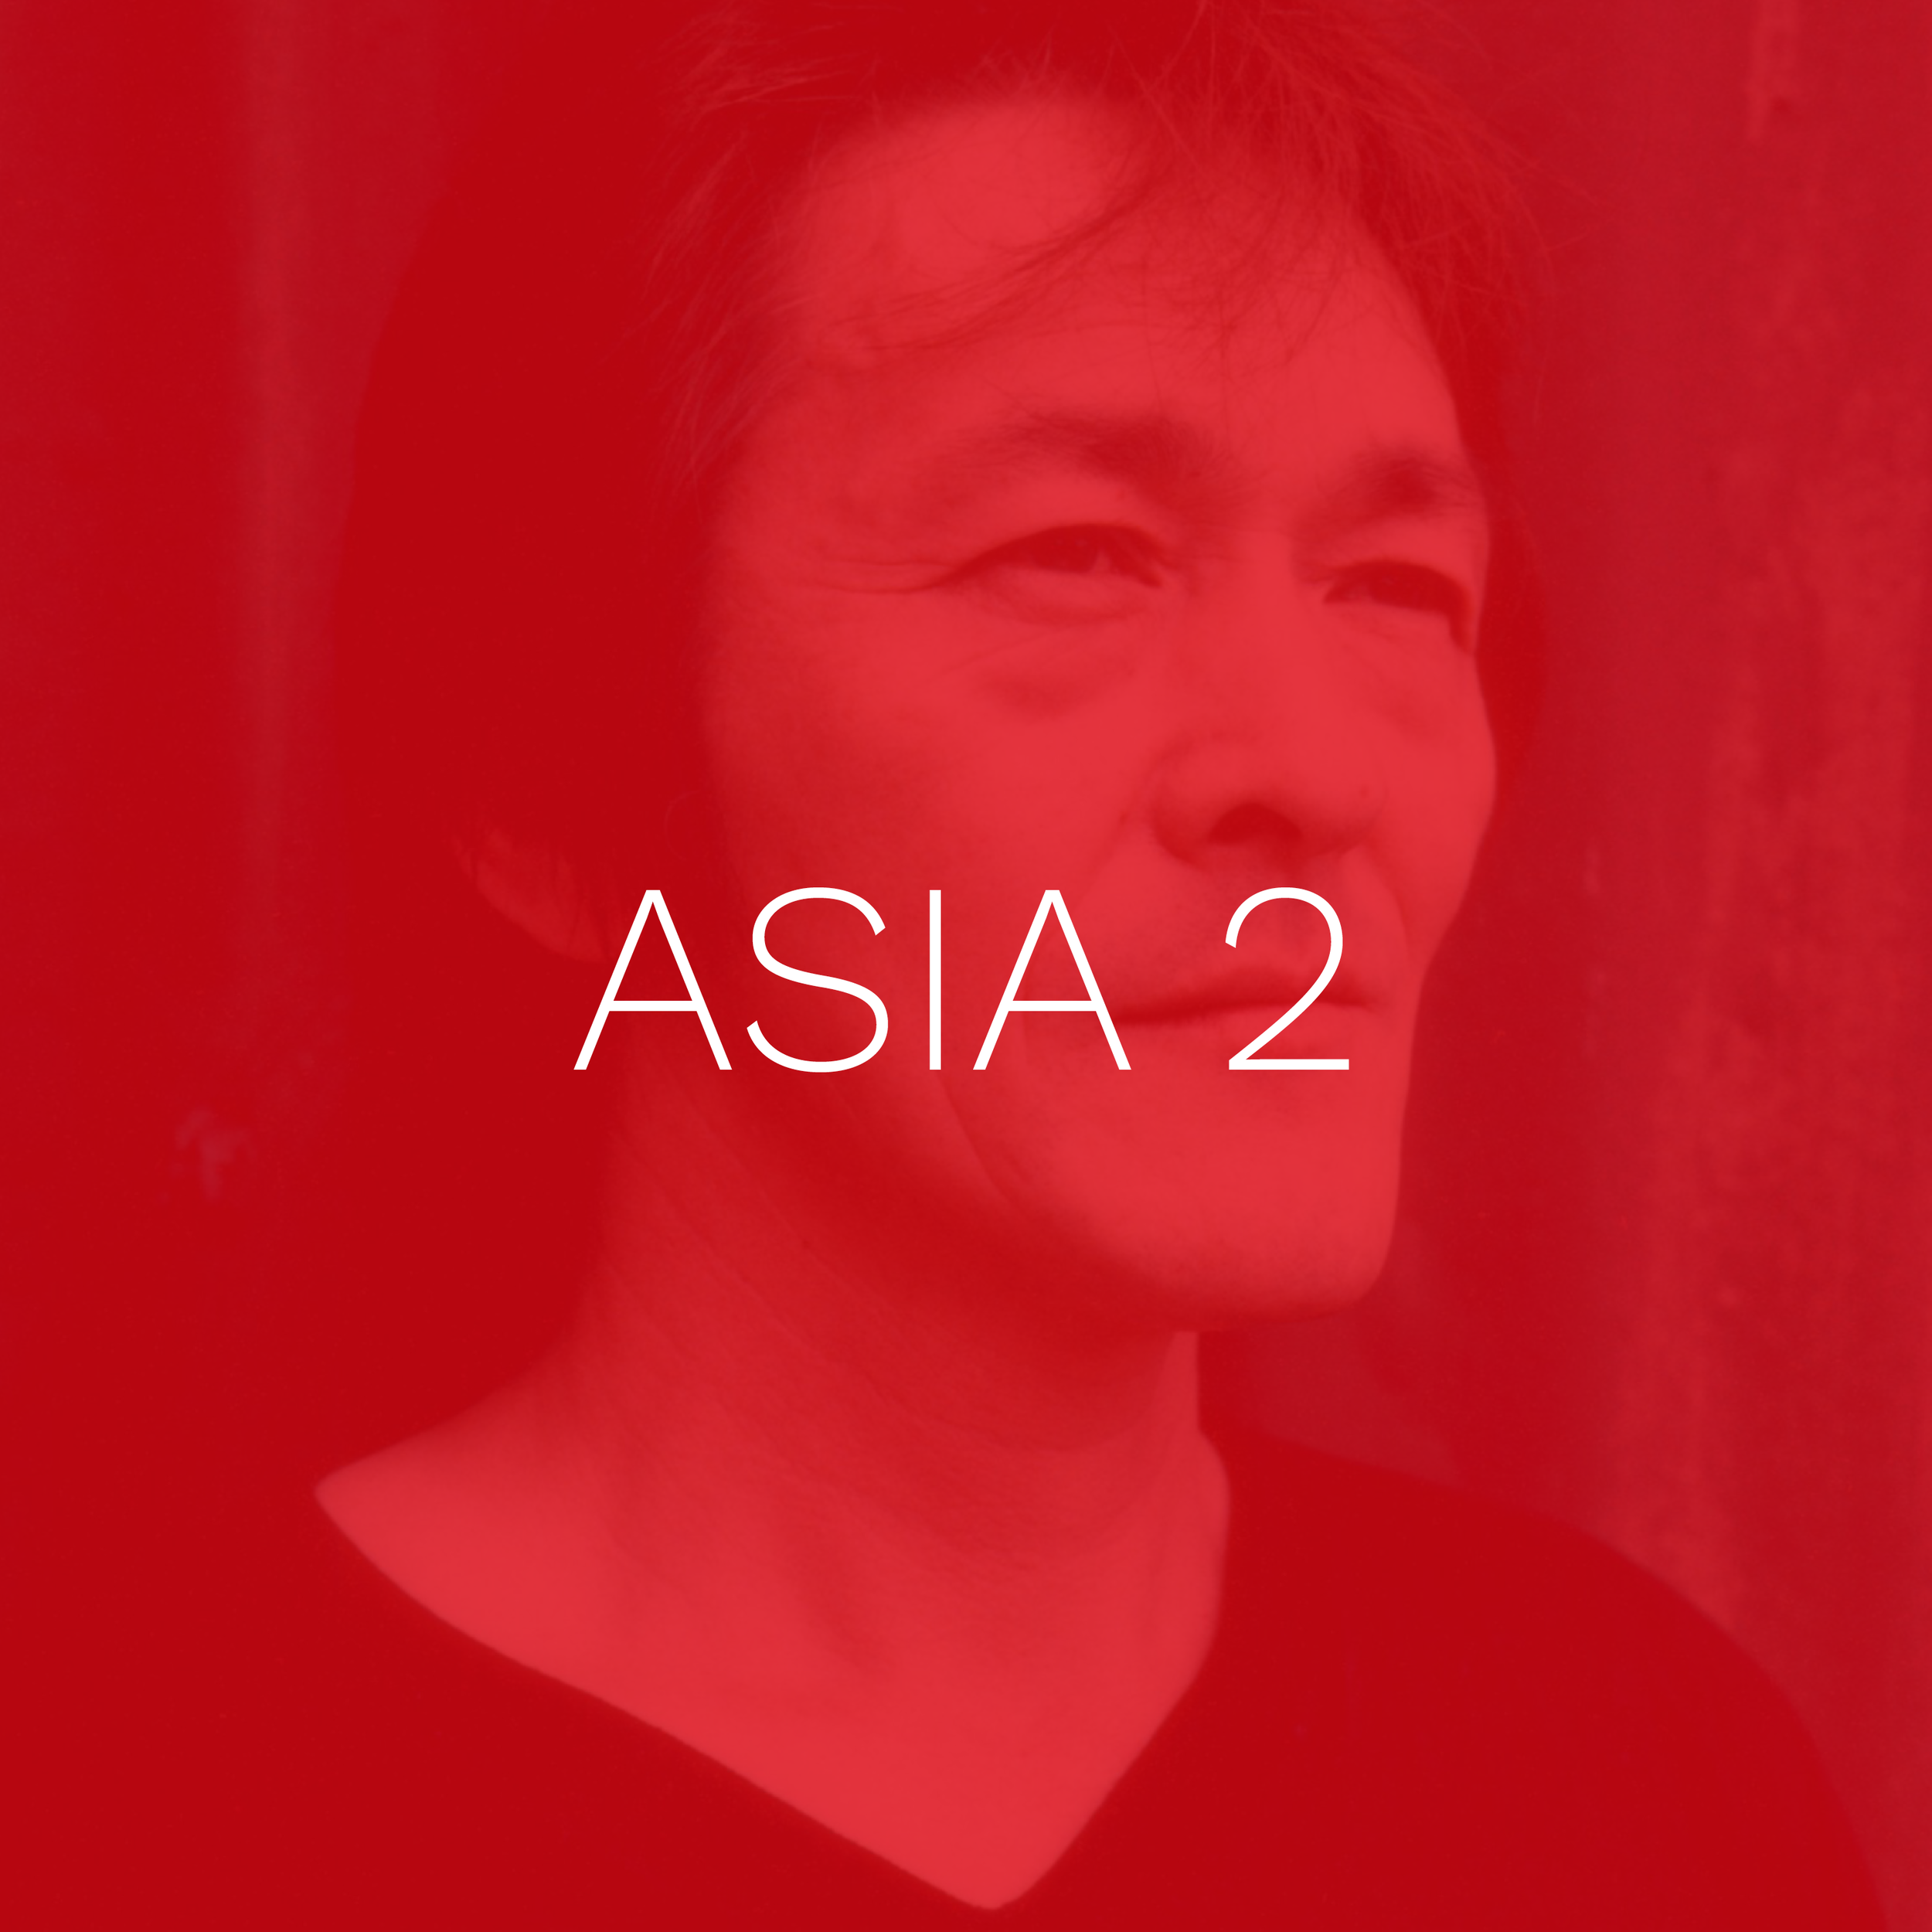 Asia 2